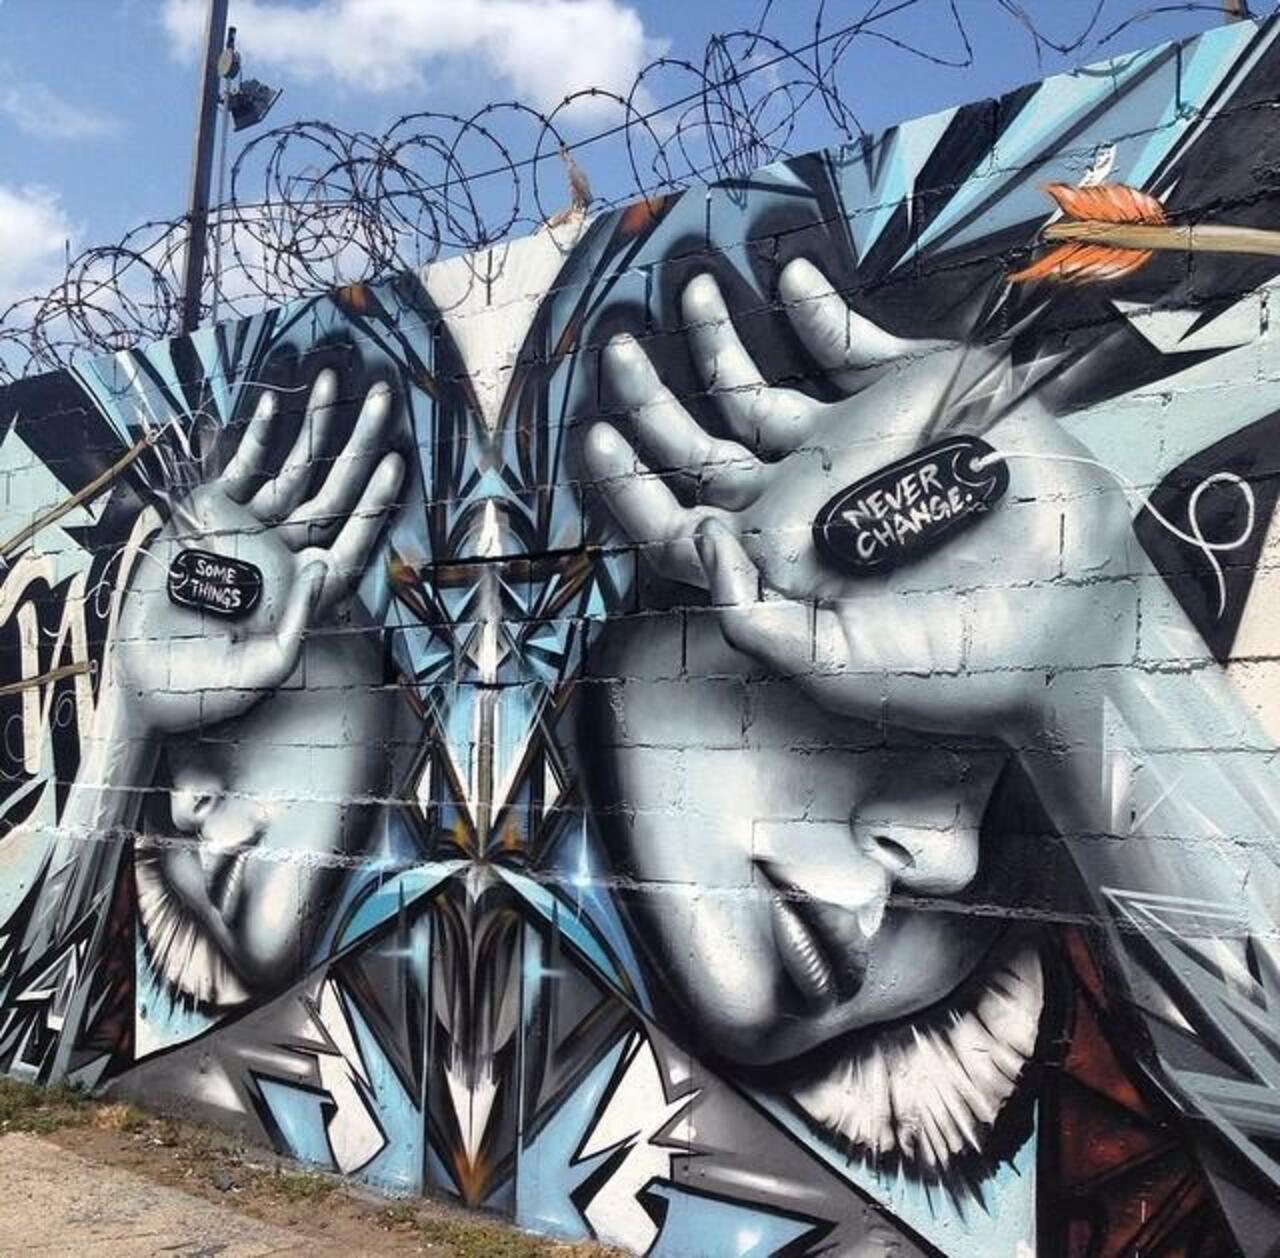 Artist @StarFighterA new Street Art mural titled 'Some Things Never Change' #art #mural #graffiti #streetart http://t.co/v7WqyoEAYg